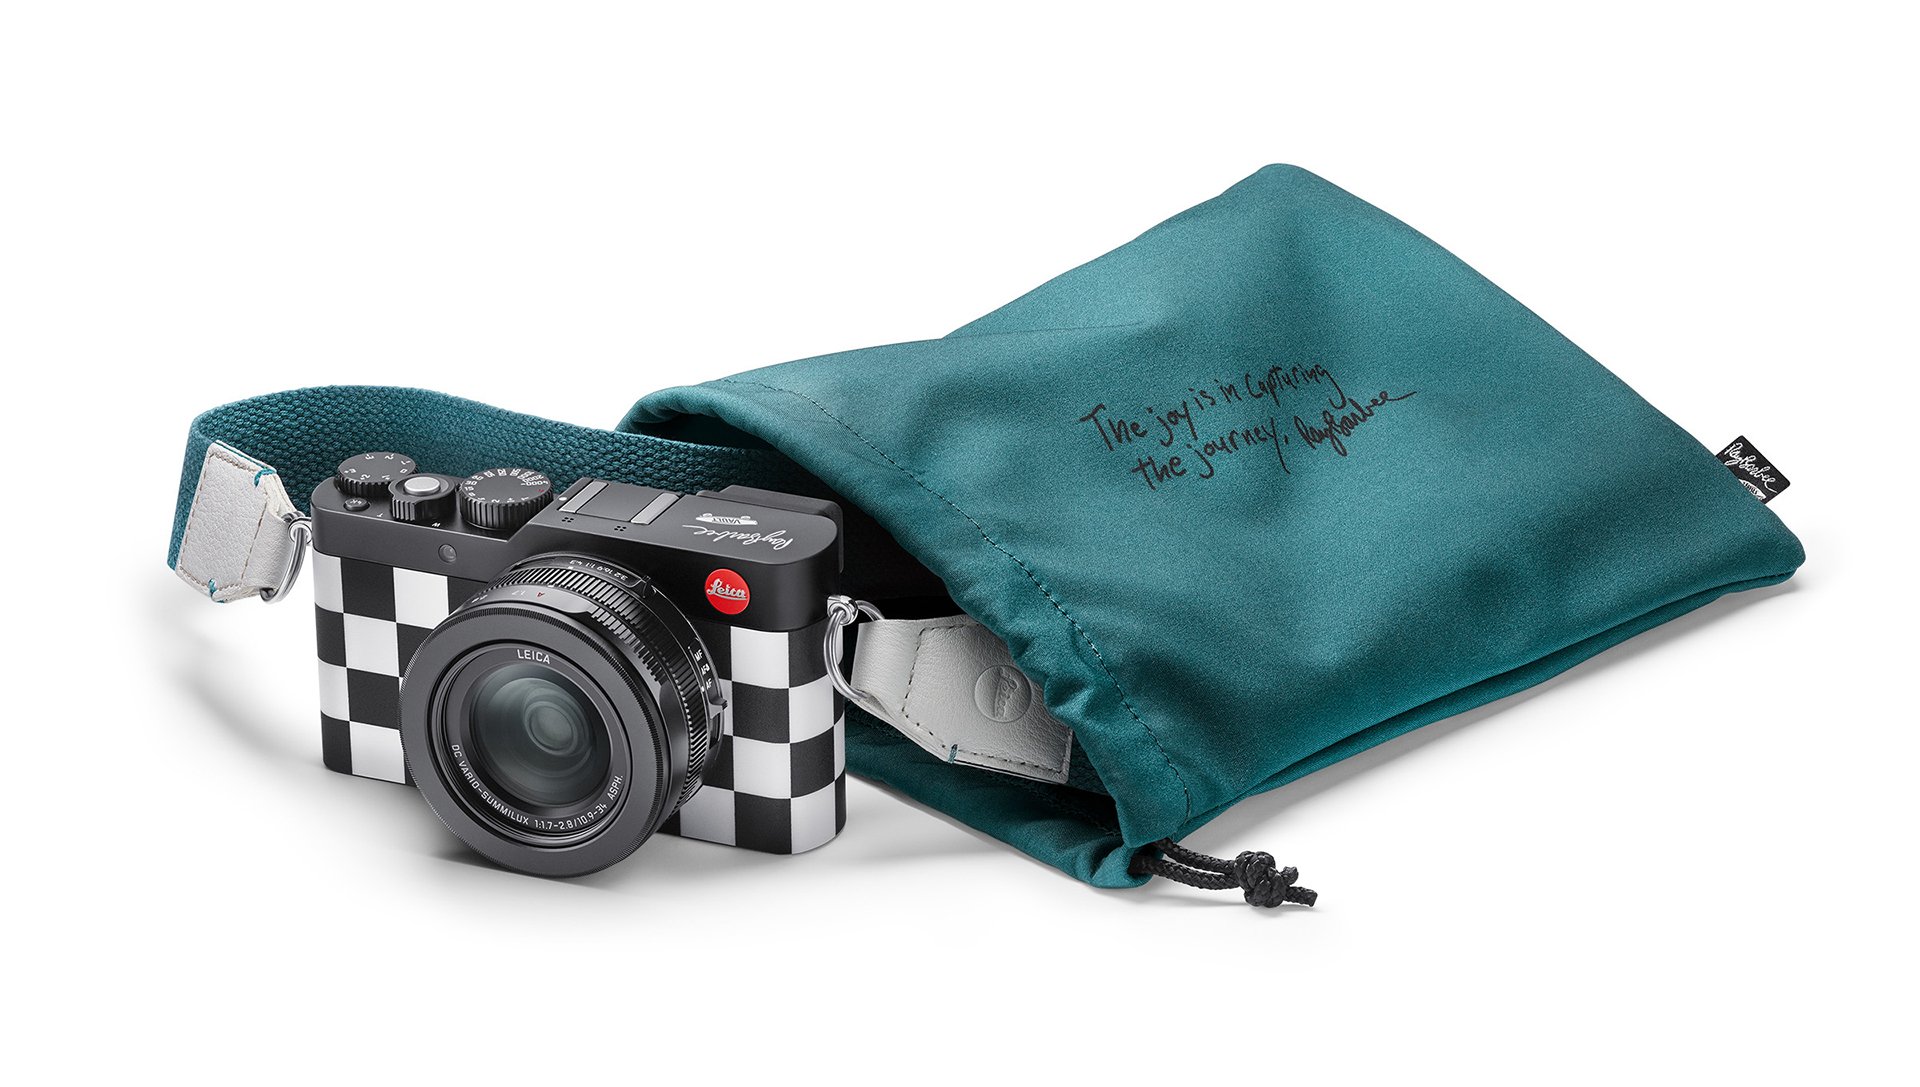 Leica представила эксклюзивную камеру в стиле Vans